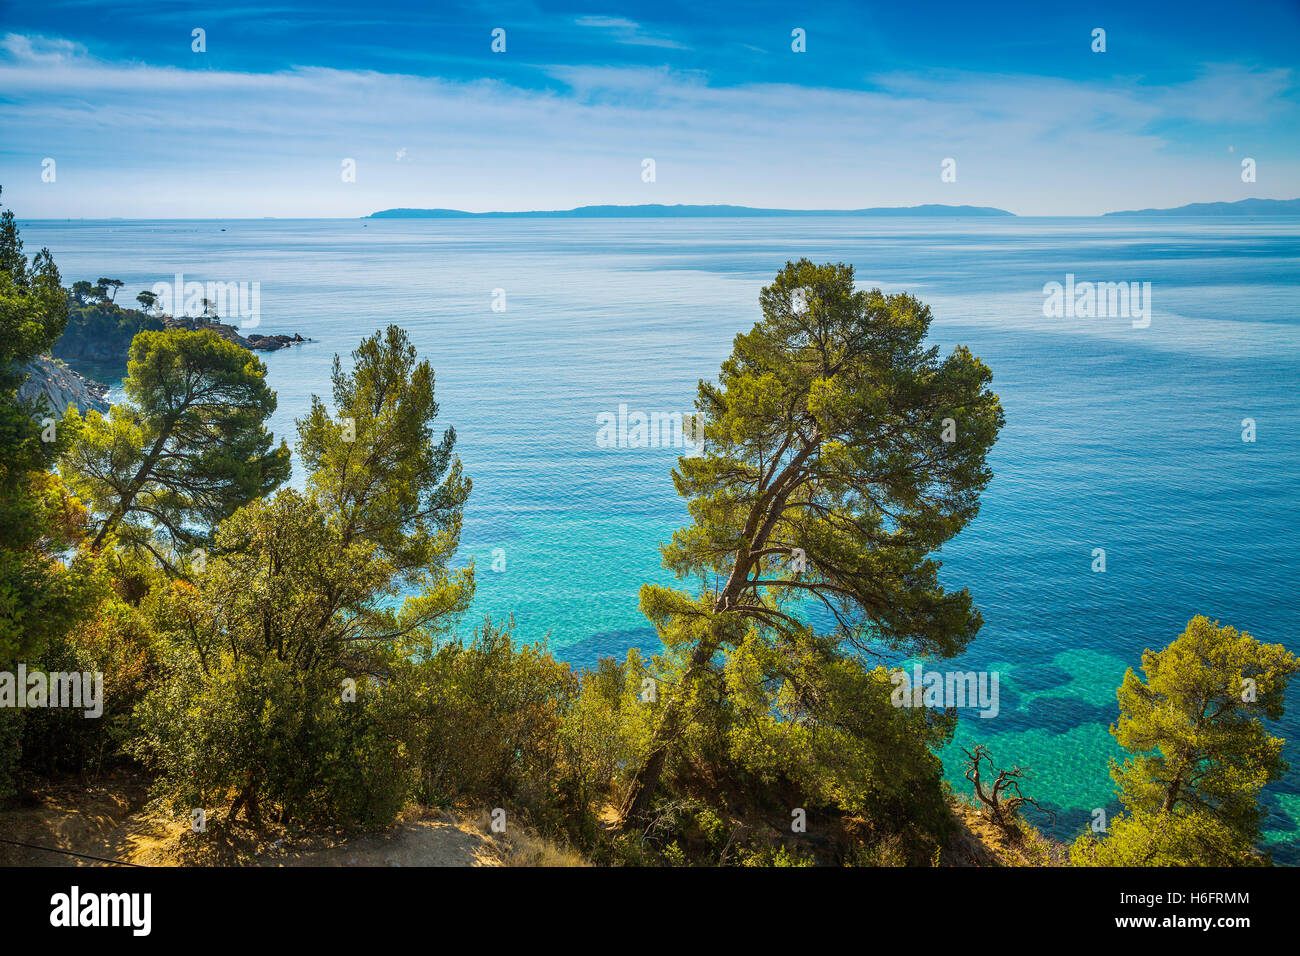 Mediterranean Sea and pines, Corniche des Maures. Le Lavandou. Var department, Provence Alpes Cote d'Azur. French Riviera France Stock Photo